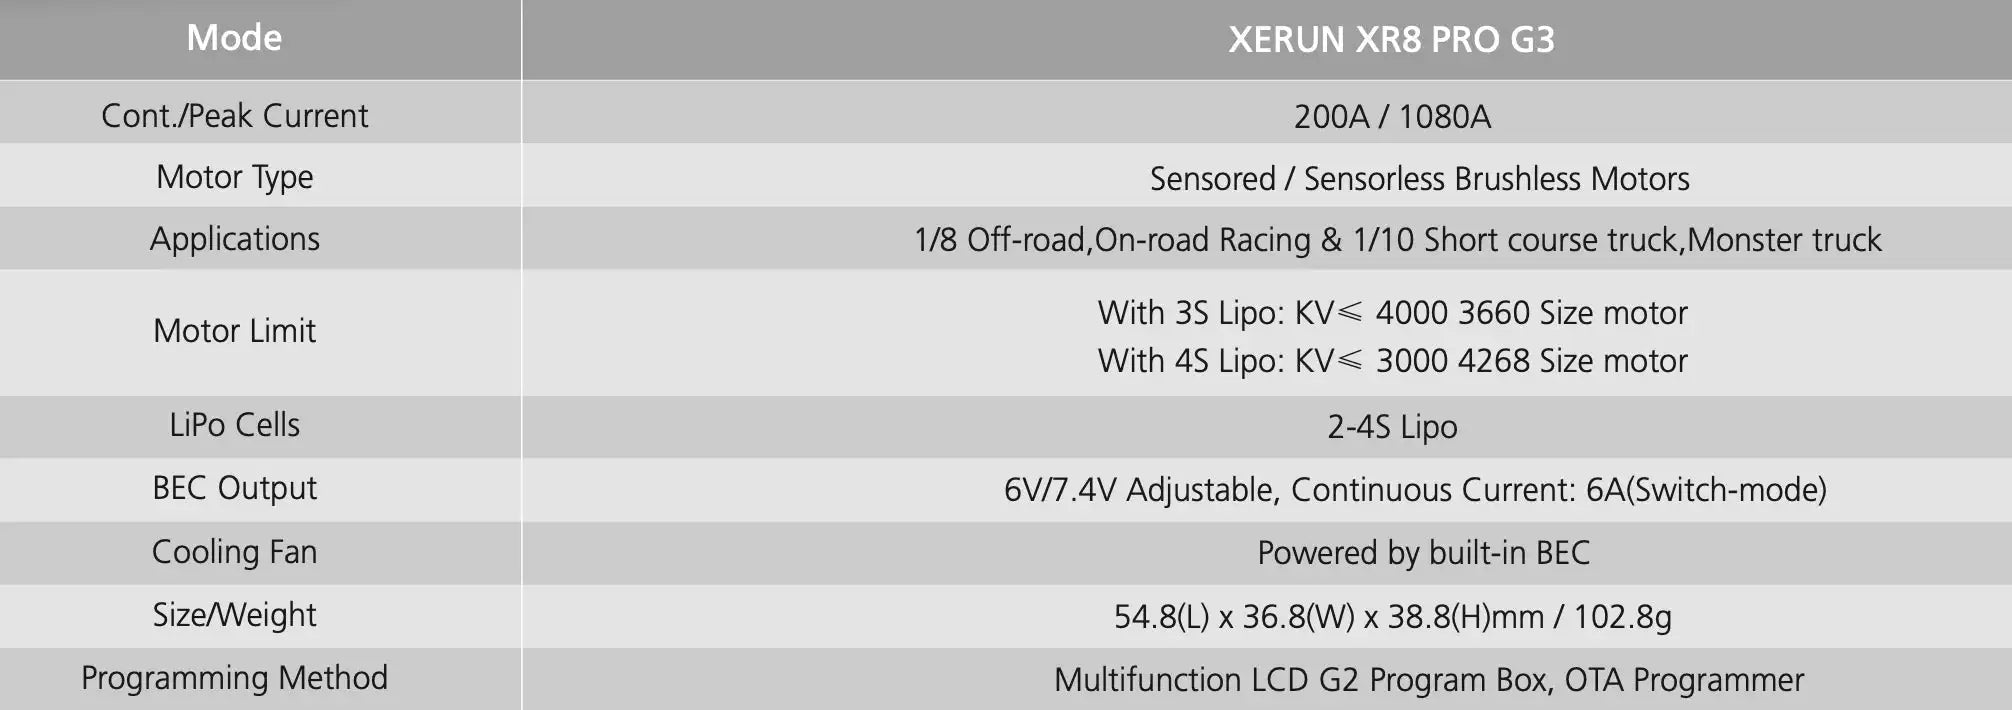 XERUN XR8 PRO 63 Cont IPeak Current 2OOA